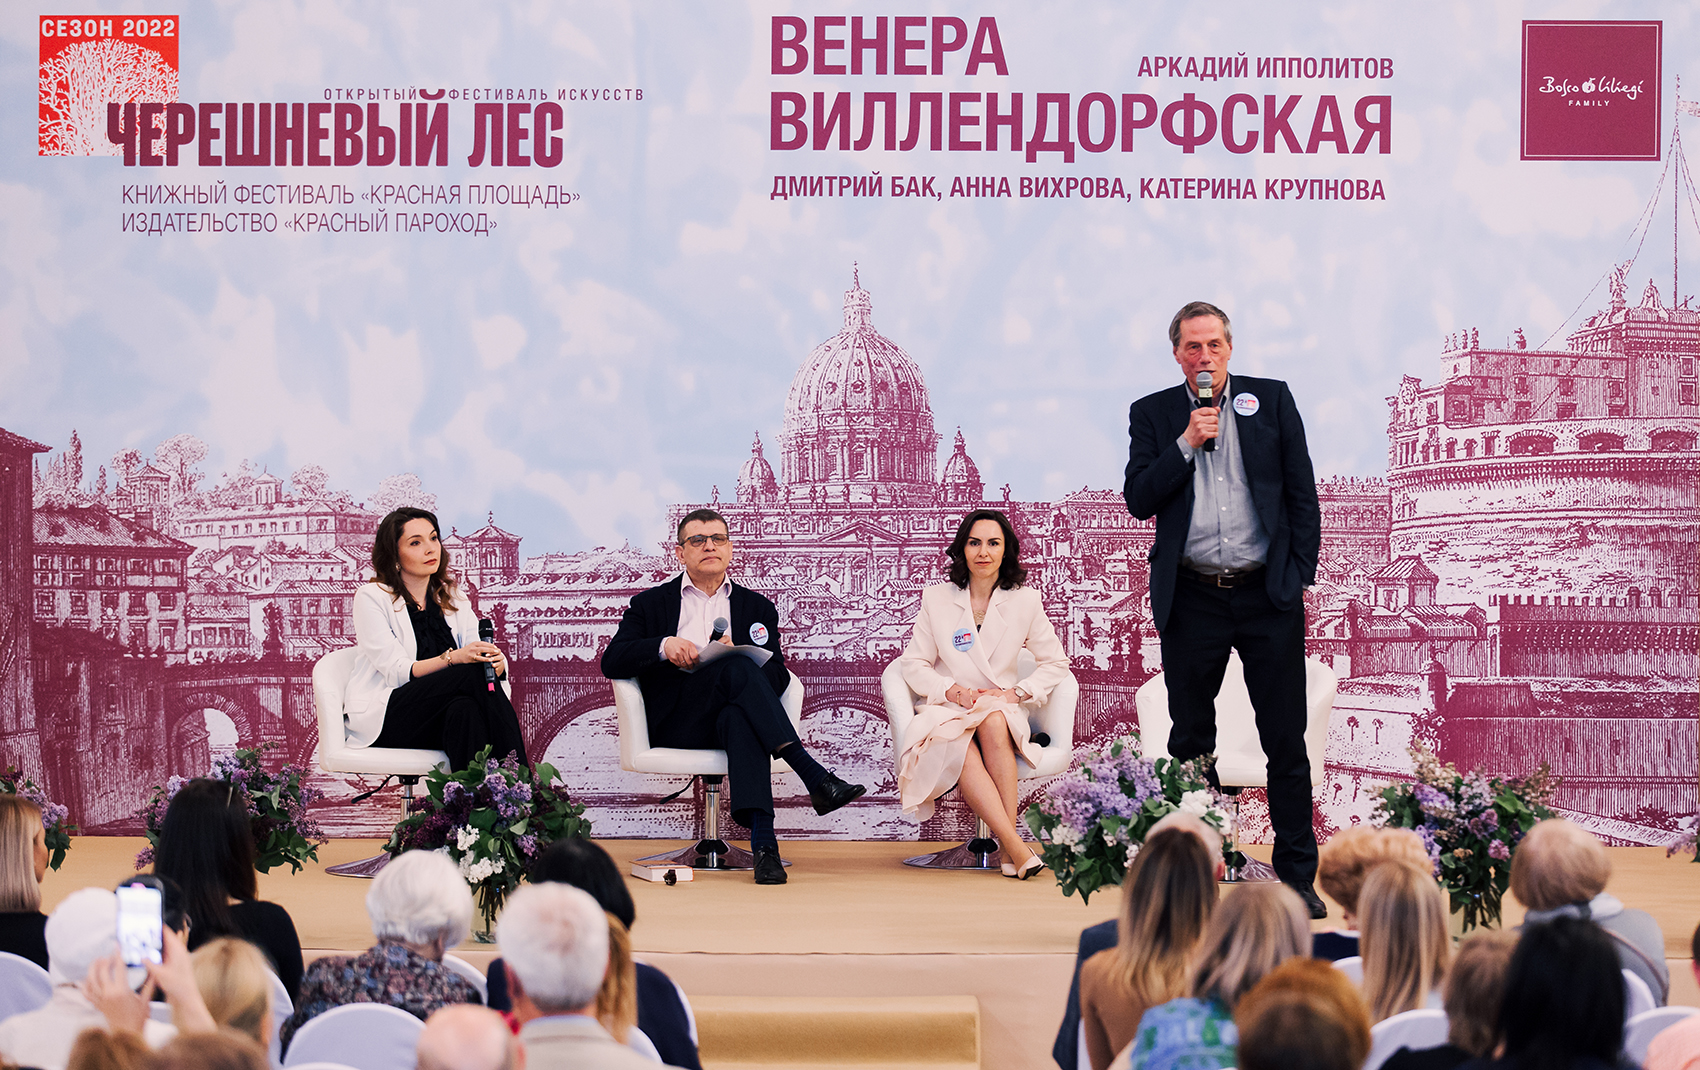 Фестиваль искусств “Черешневый лес” представил public-talk с  участием Аркадия Ипполитова и Дмитрия Бака